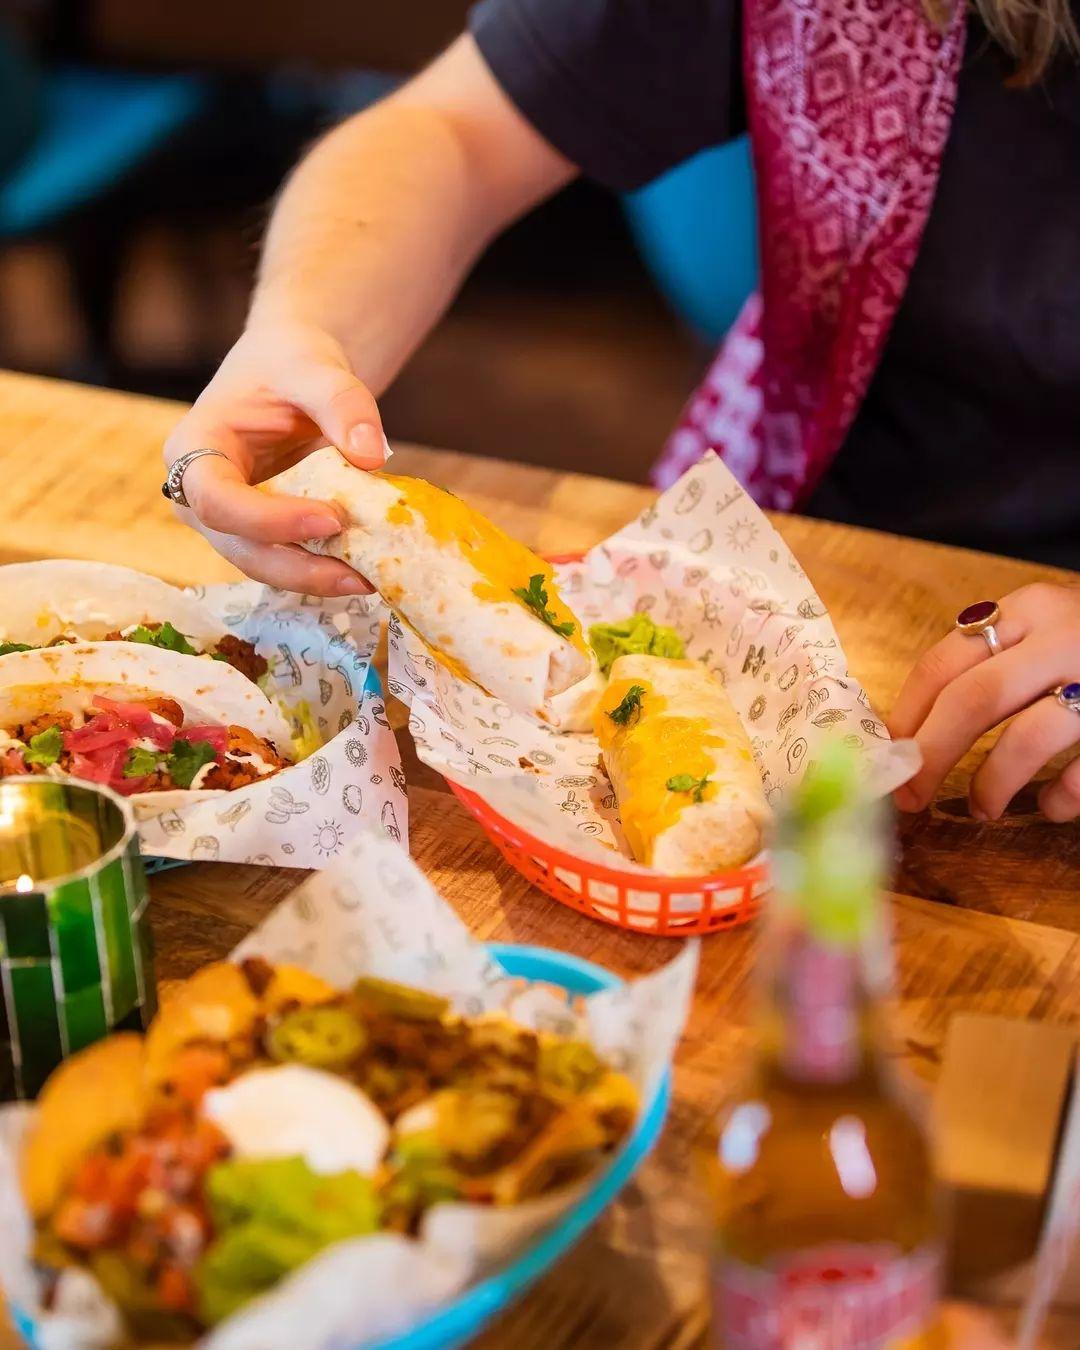 Er is maar één manier hoe jij jouw donderdagavond gepast kan afsluiten. Met burrito's natuurlijk!